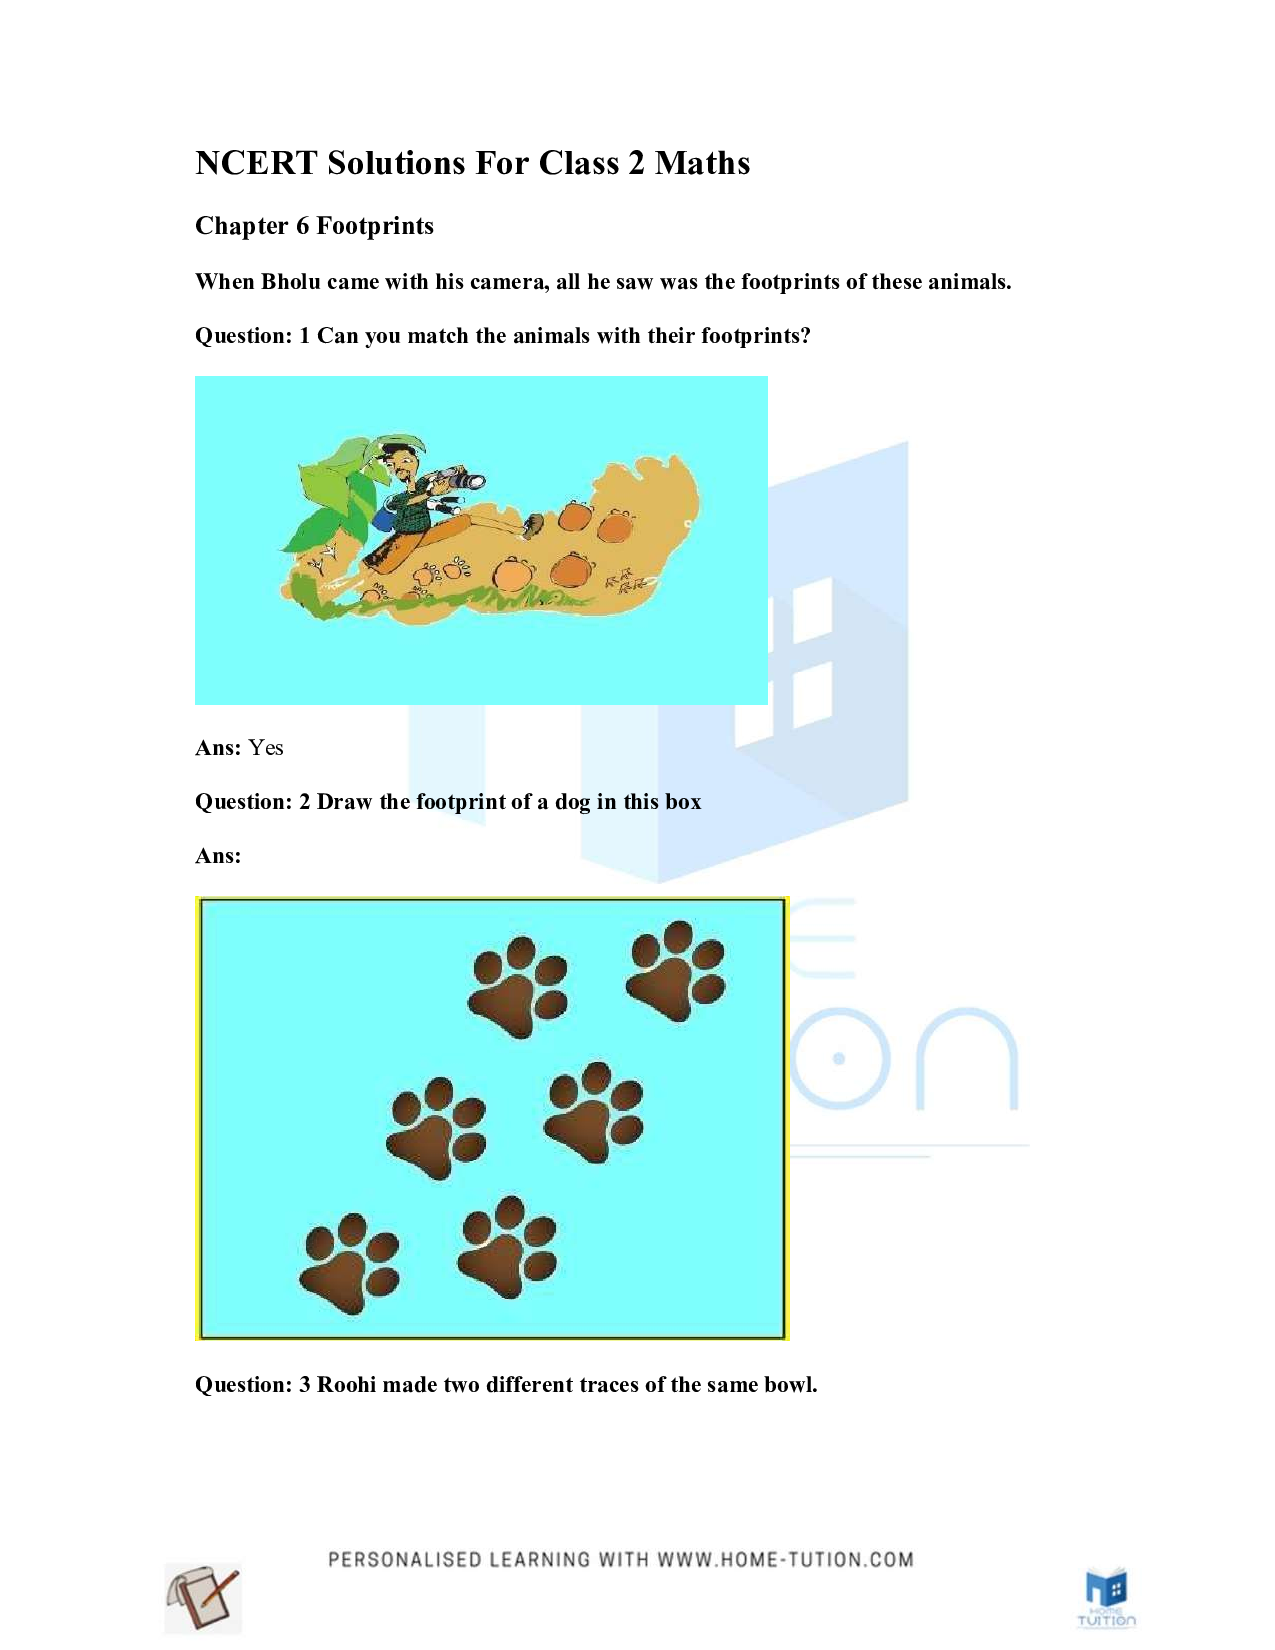 NCERT Solution for Class 2 Maths Footprints